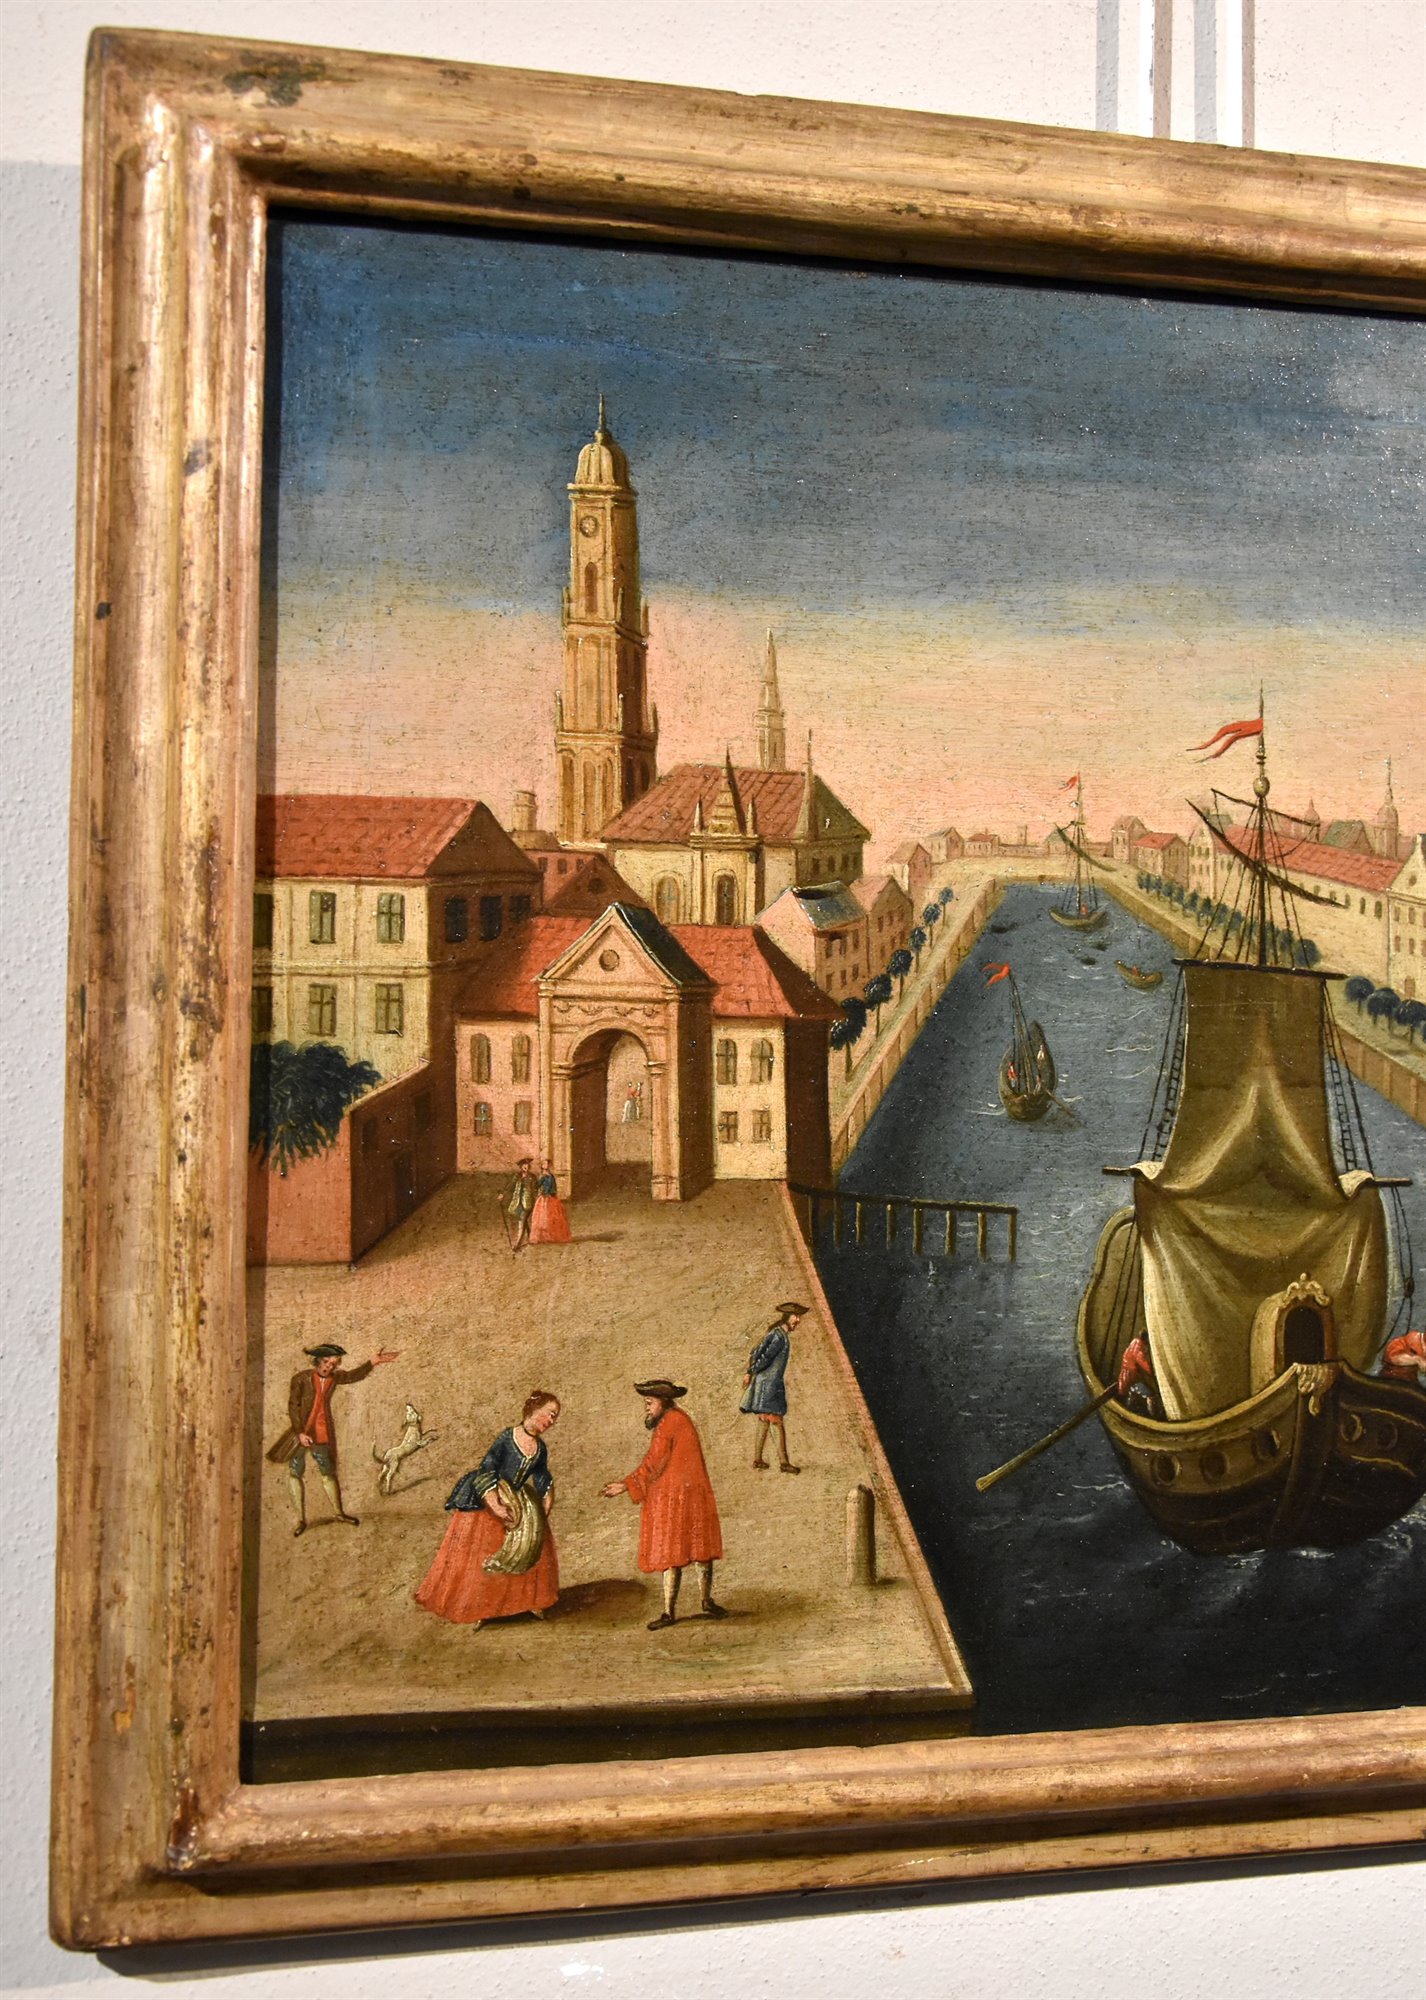 Coppia di vedute di Rotterdam: Il palazzo della Borsa/ Veduta del fiume Mosa con l’antico porto